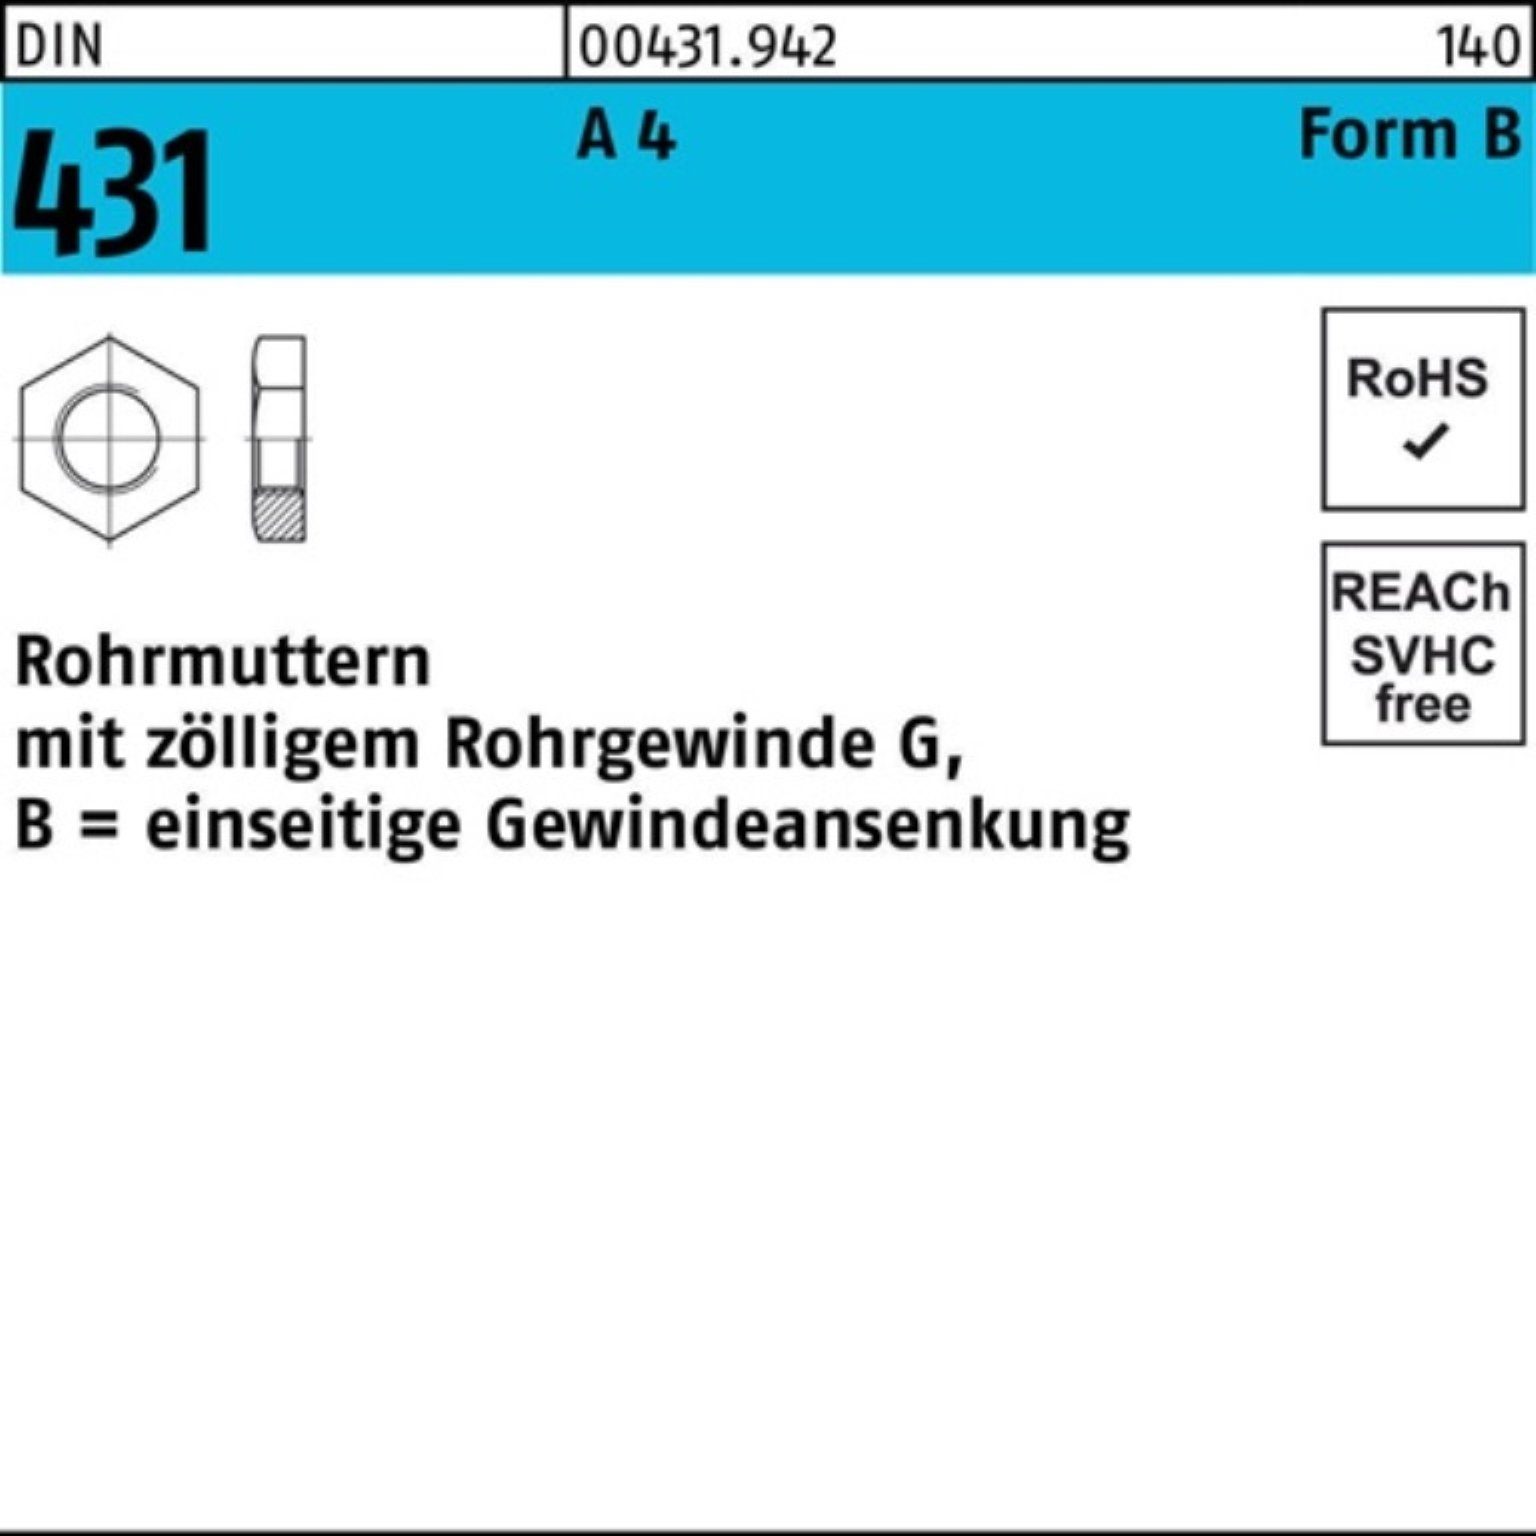 Reyher Rohrmutter 100er Pack Rohrmutter DIN 431 BG 1 1/2 A 4 1 Stück DIN 431 A 4 Form B